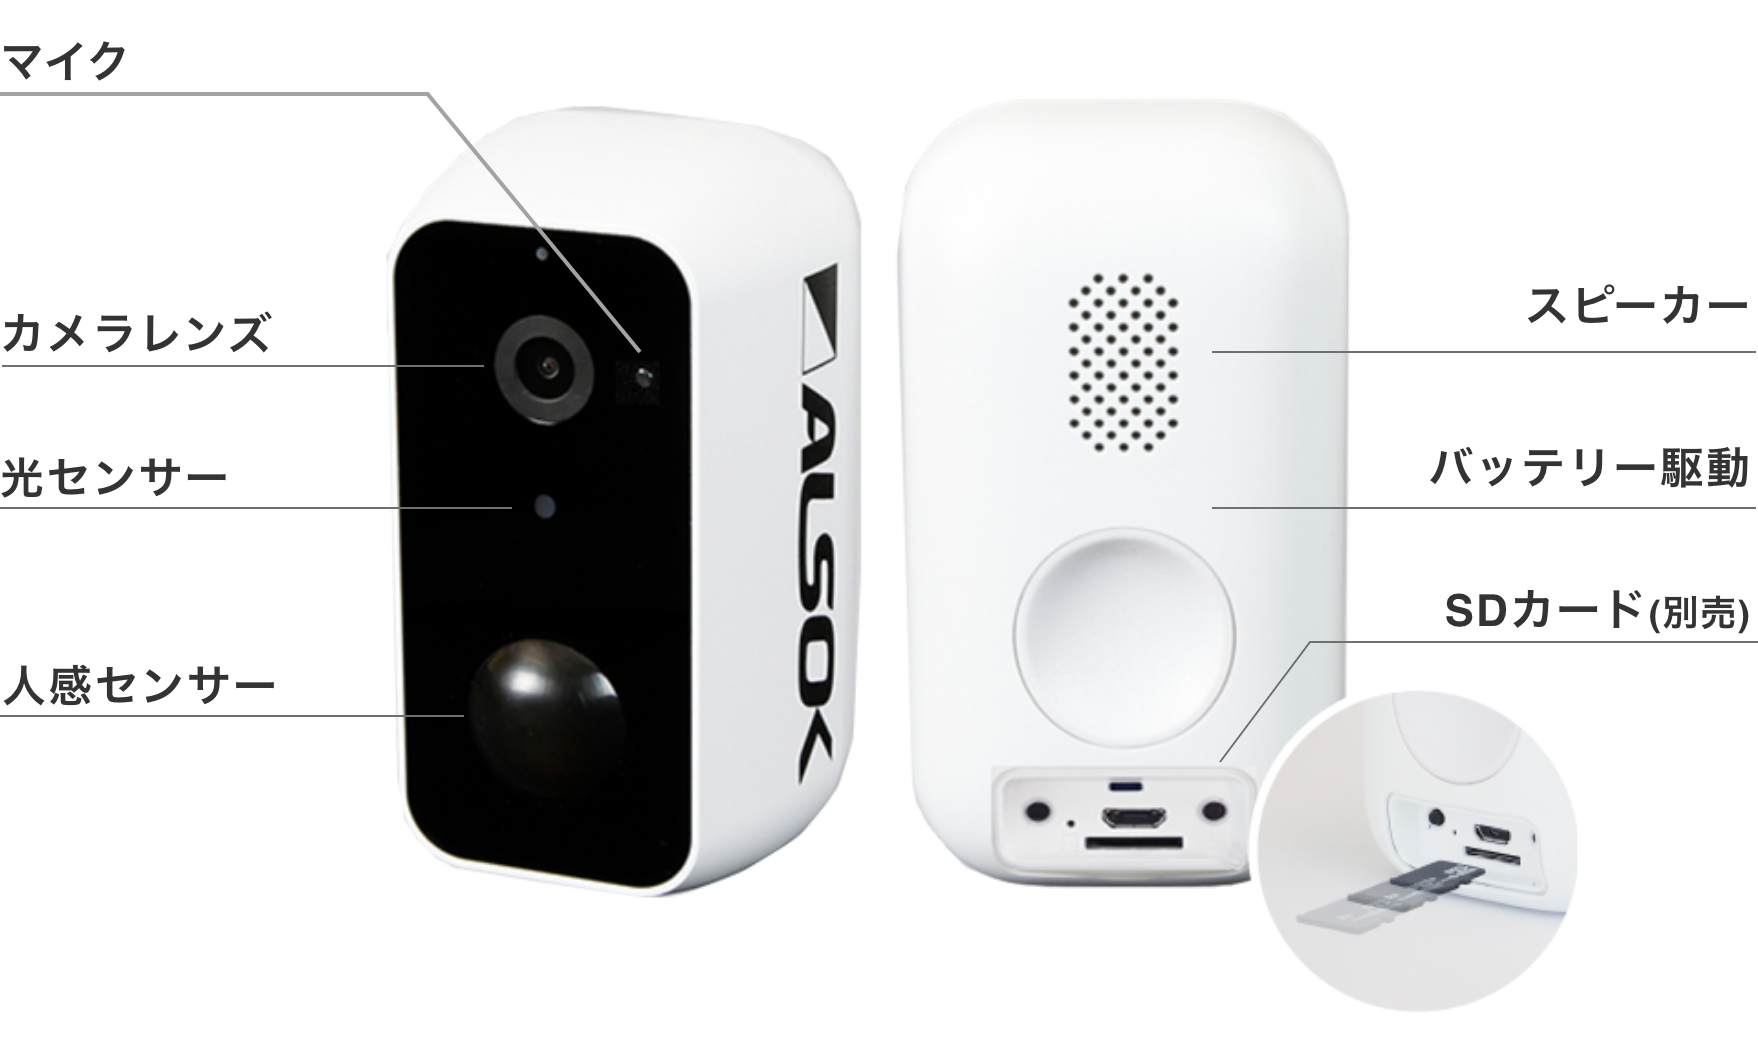 「HOME ALSOK Connect Eye 屋外対応無線式カメラ」の写真。正面の上から、マイク、カメラレンズ、光センサー、人感センサーが付いている。背面は上からスピーカー、SDカード差込口、バッテリー駆動用の充電口が付いている。